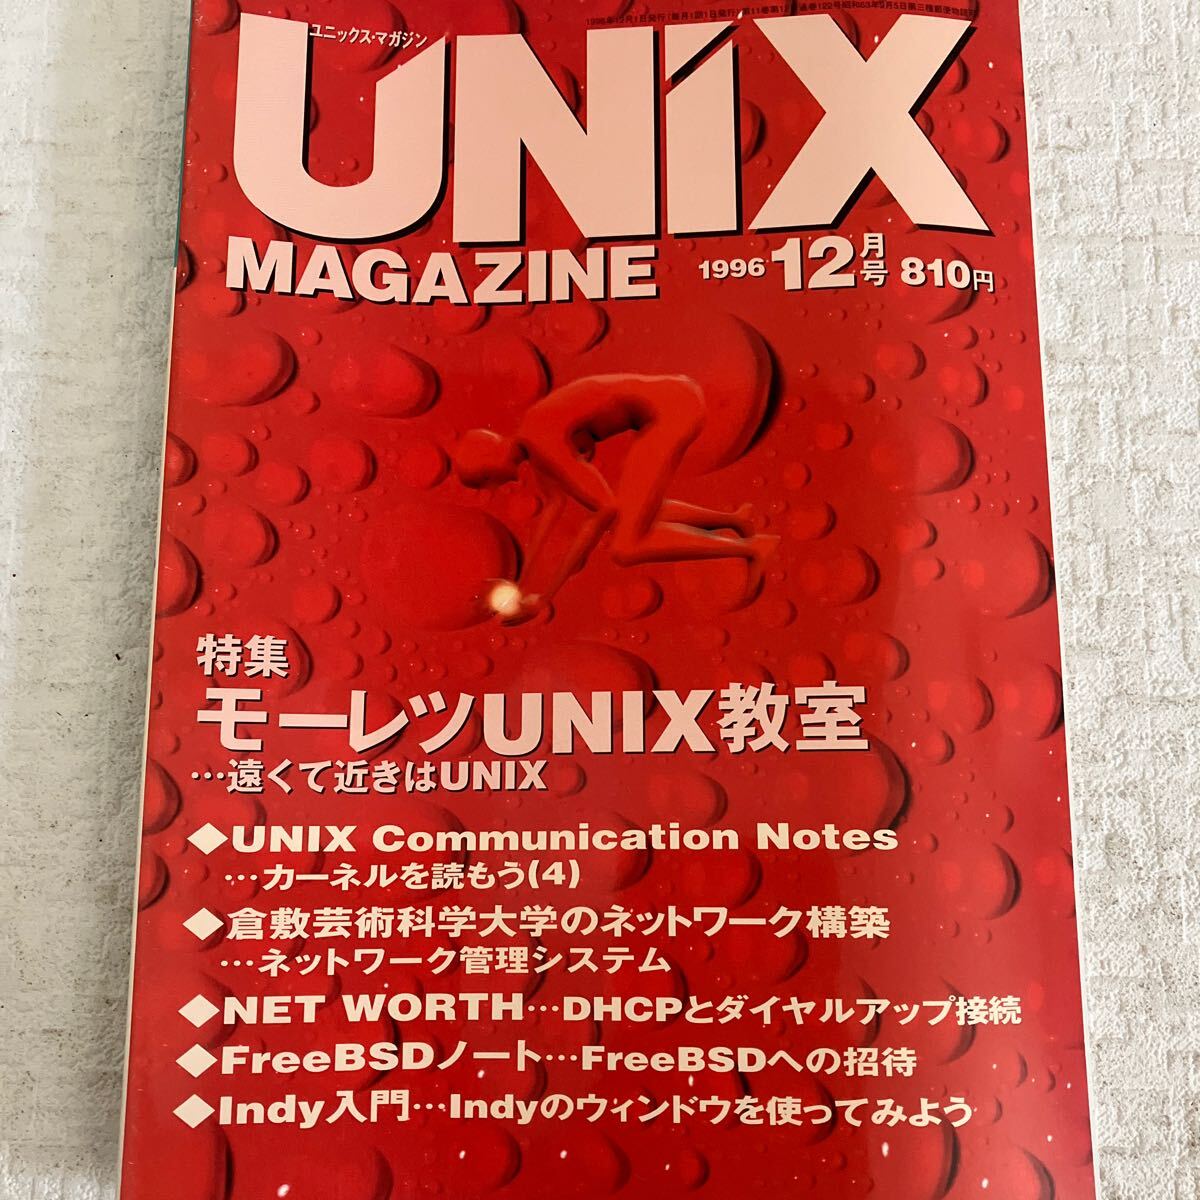 e338/19-80 技術情報誌 雑誌 ユニックスマガジン UNiX MAGAZINE 1996 まとめて 6冊 アスキー プログラミング 当時物 UNIX教室_画像7